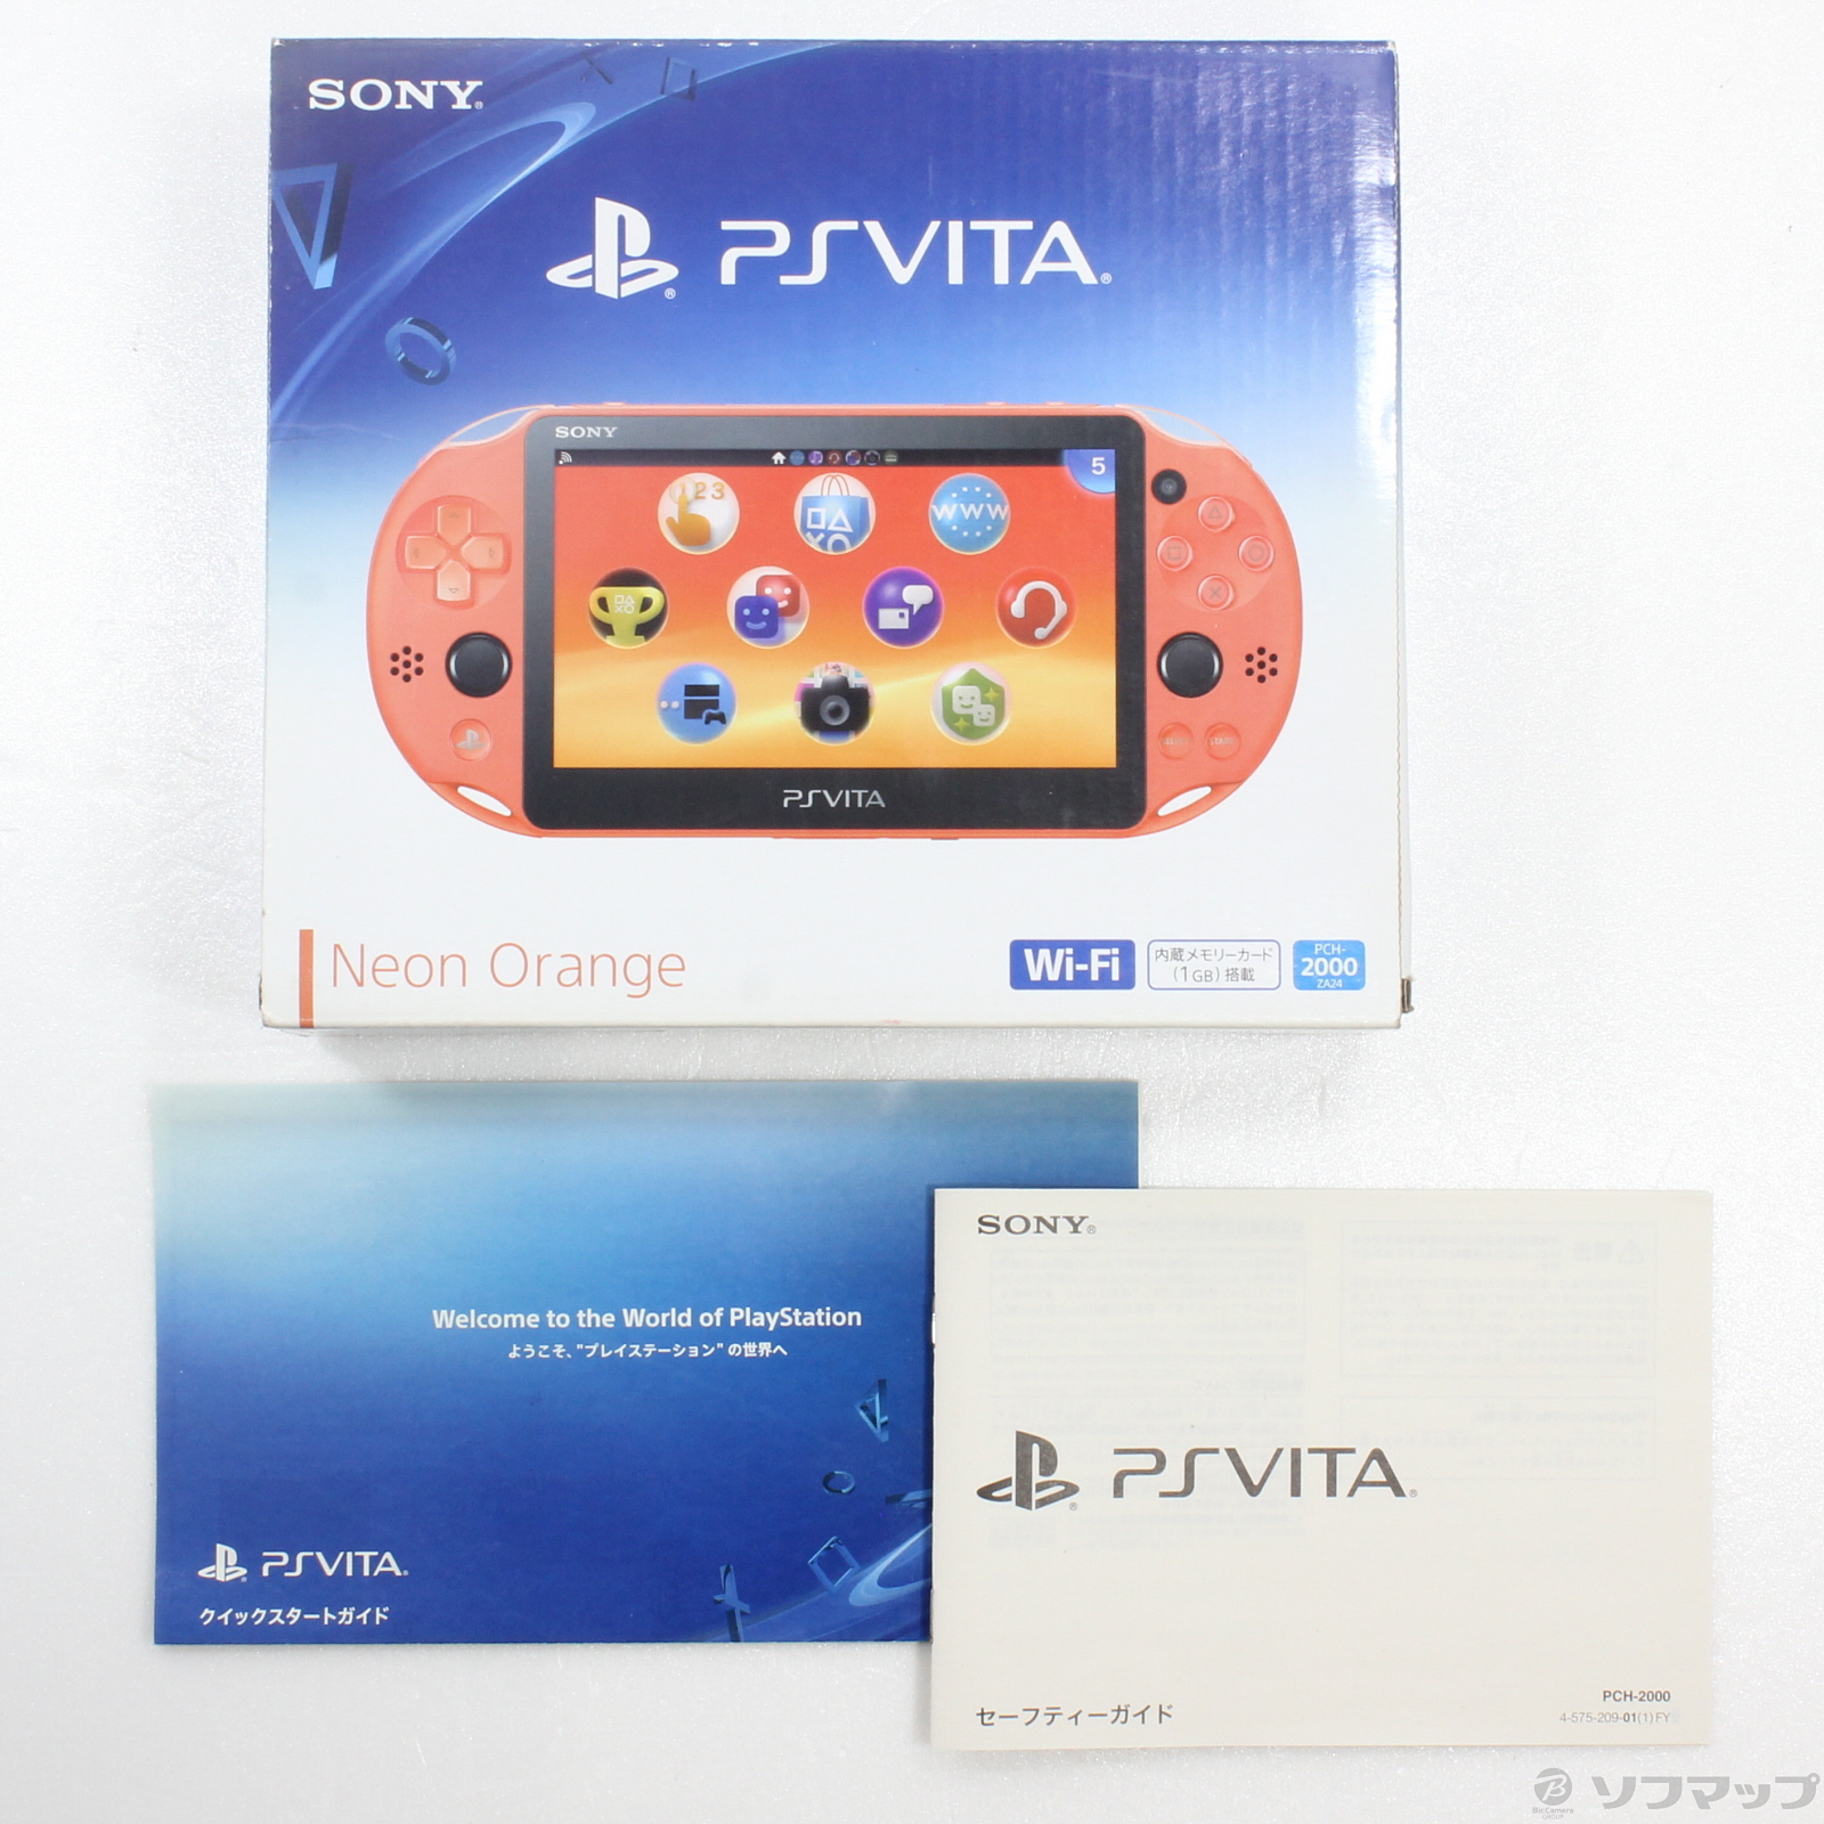 中古】PlayStation Vita Wi-Fiモデル ネオンオレンジ PCH-2000ZA